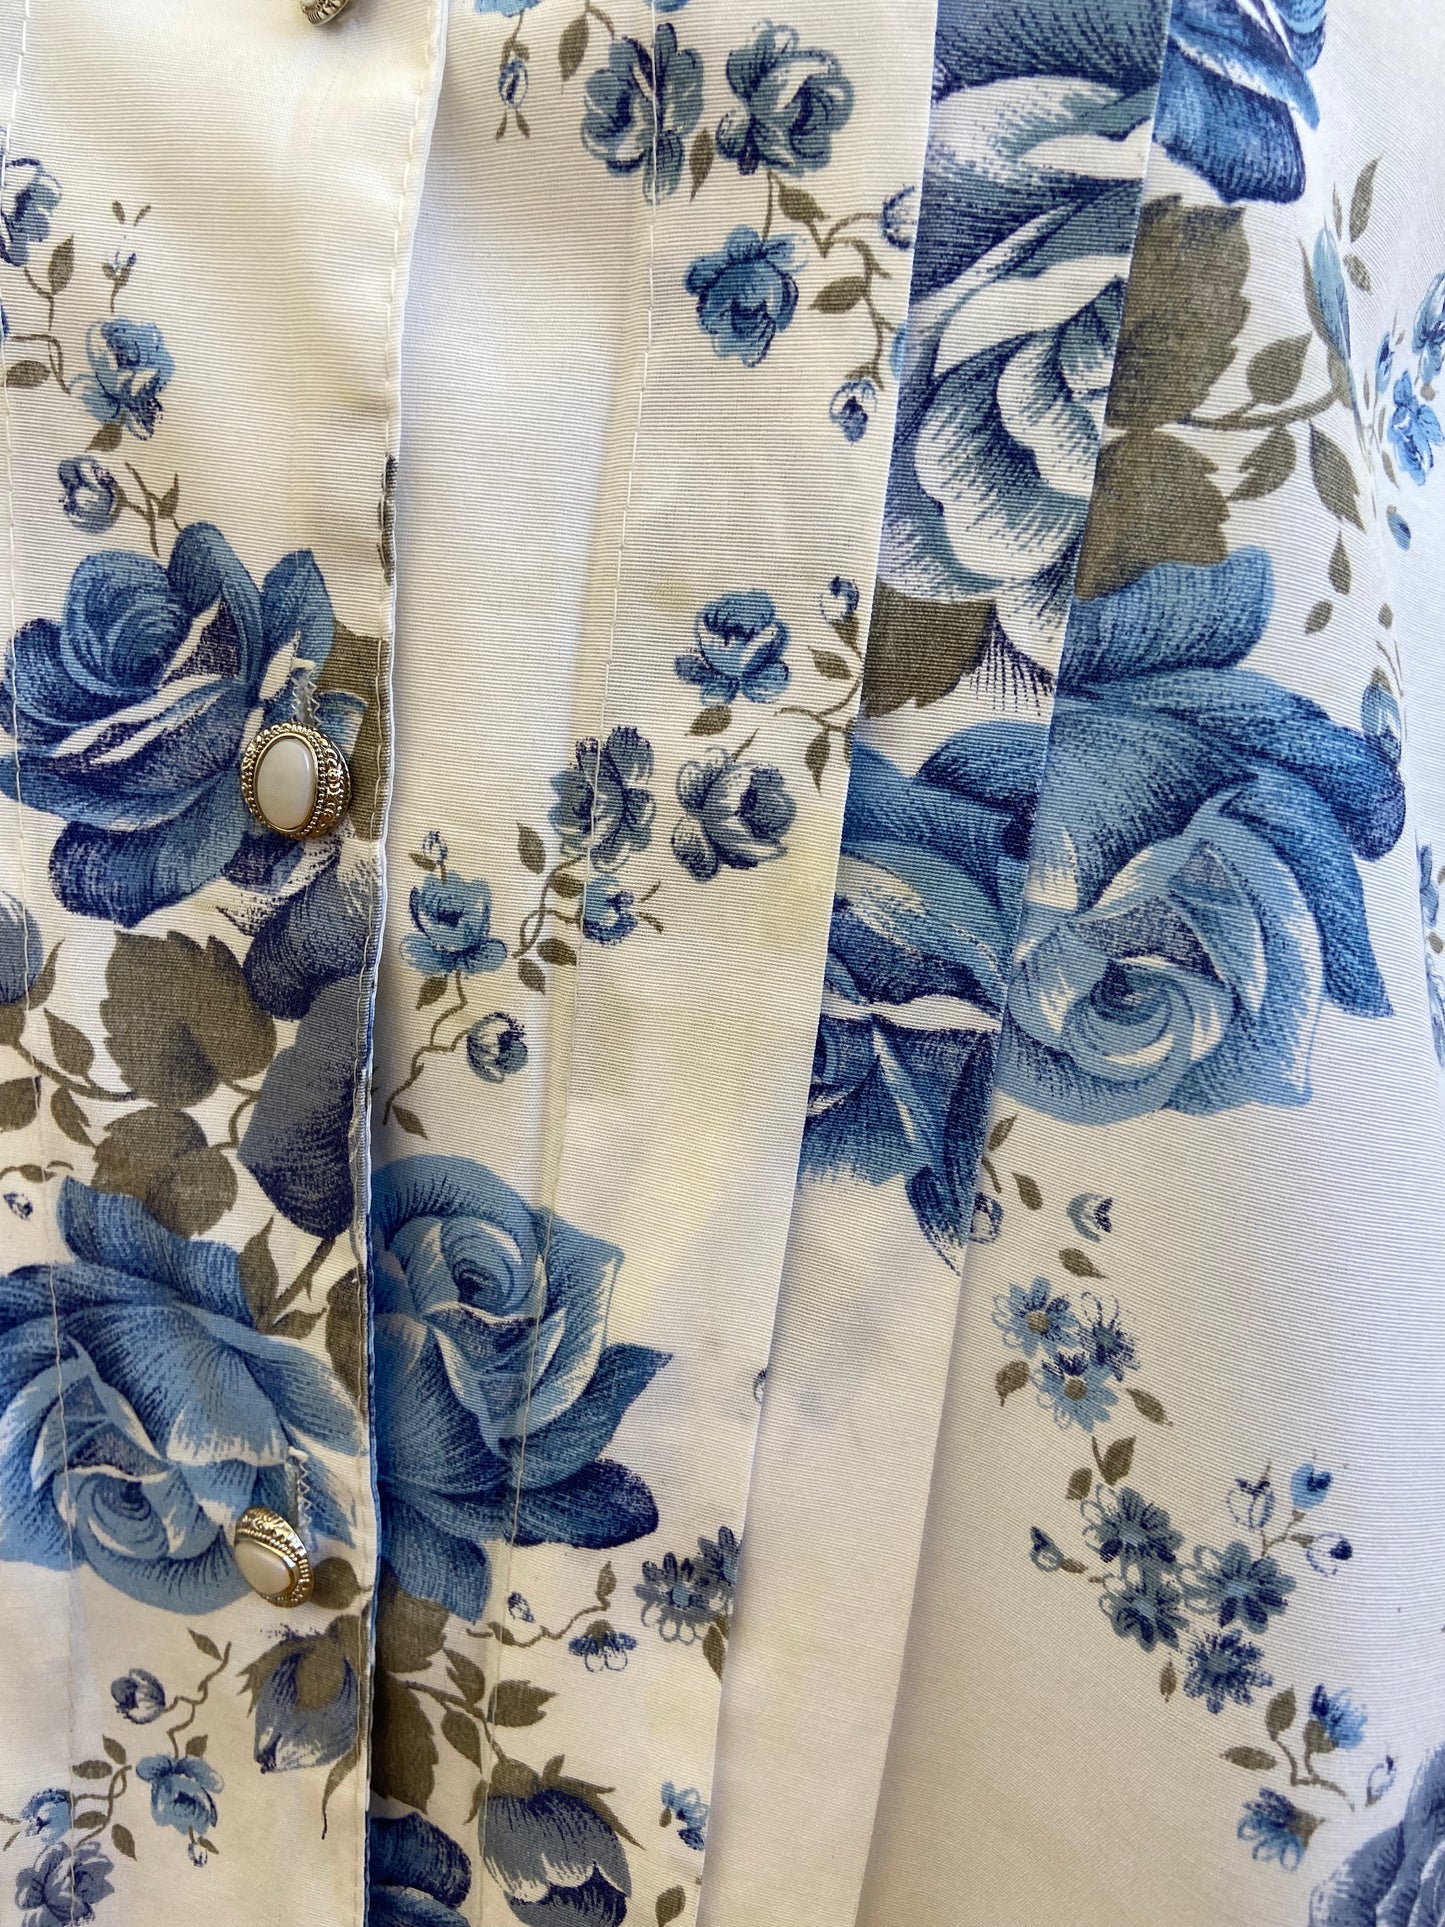 Blue flowers lace shirt